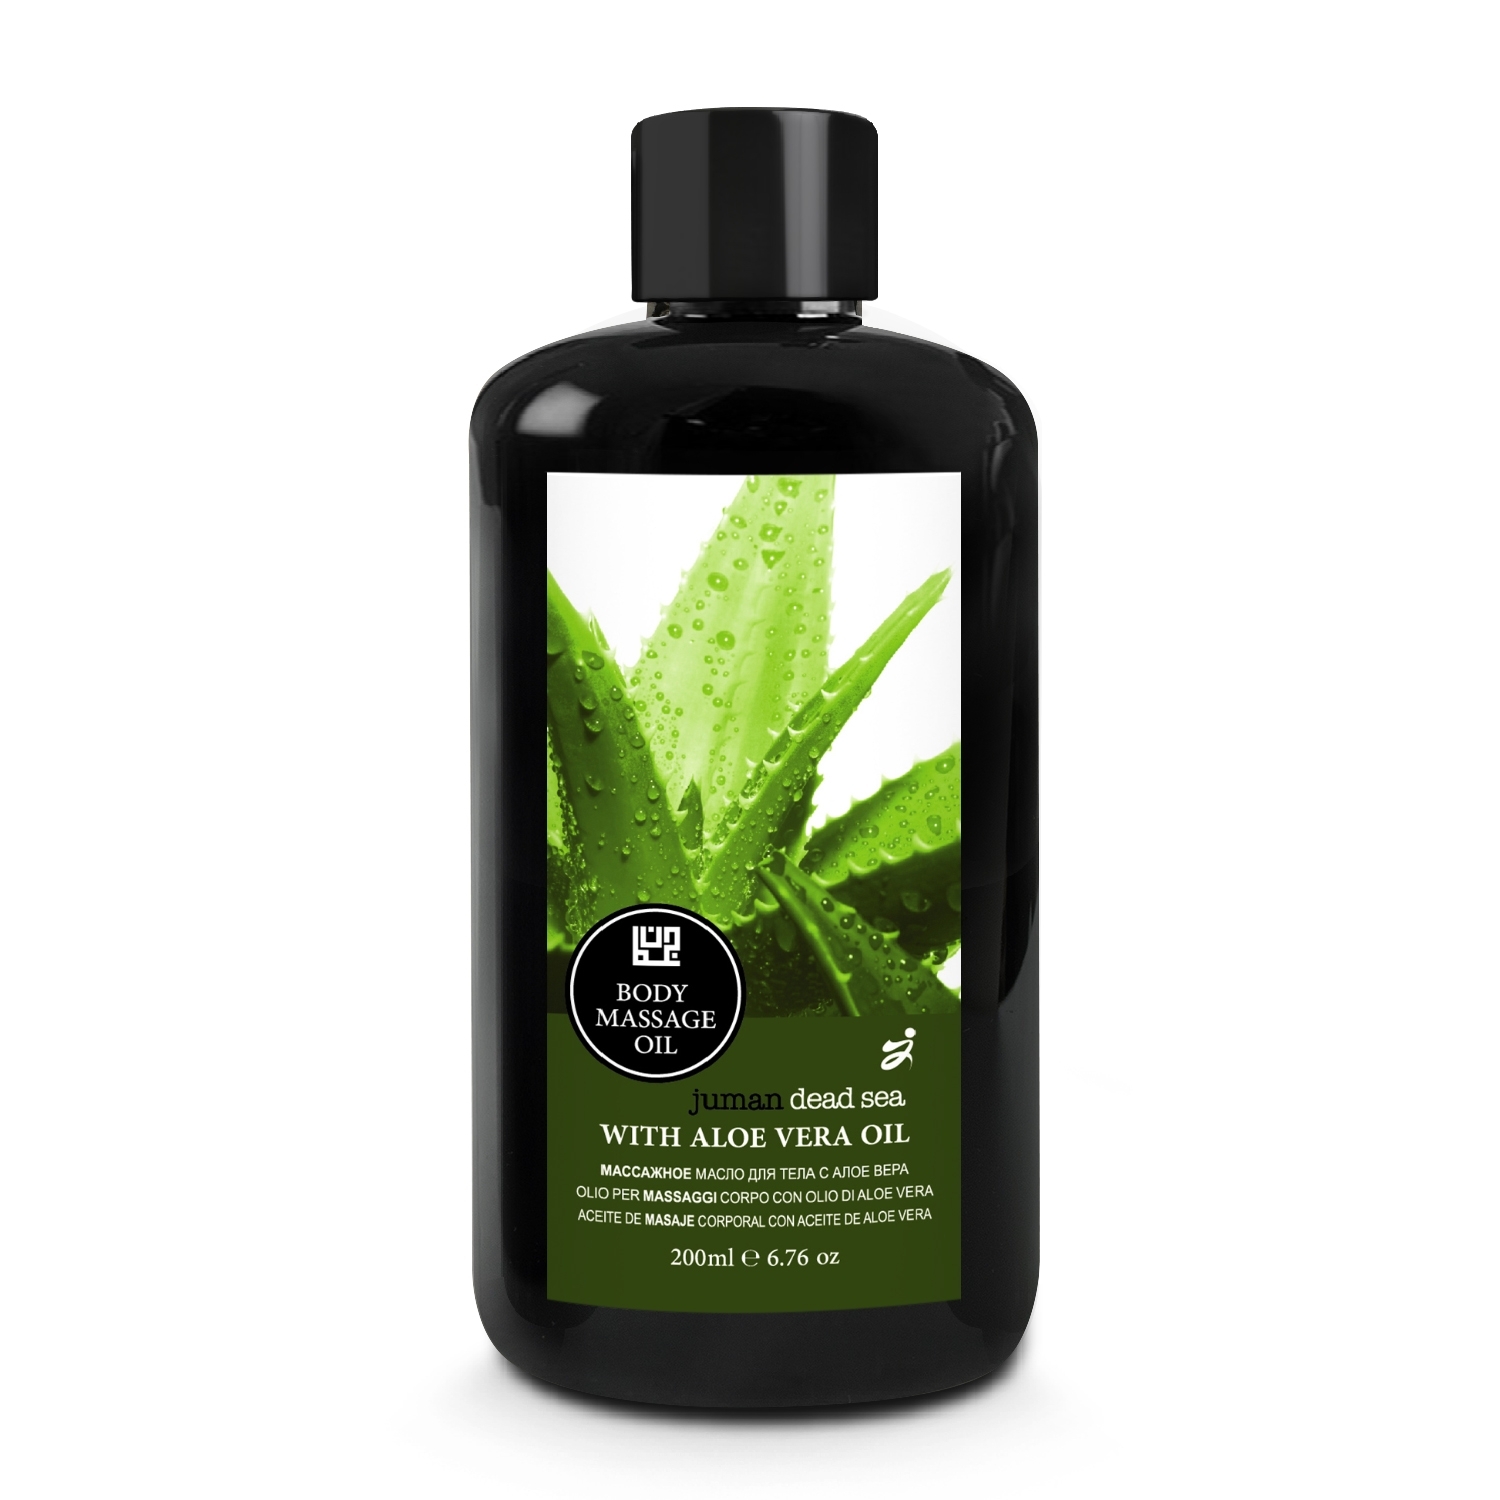 Body Massage Oil with Aloe Vera Oil